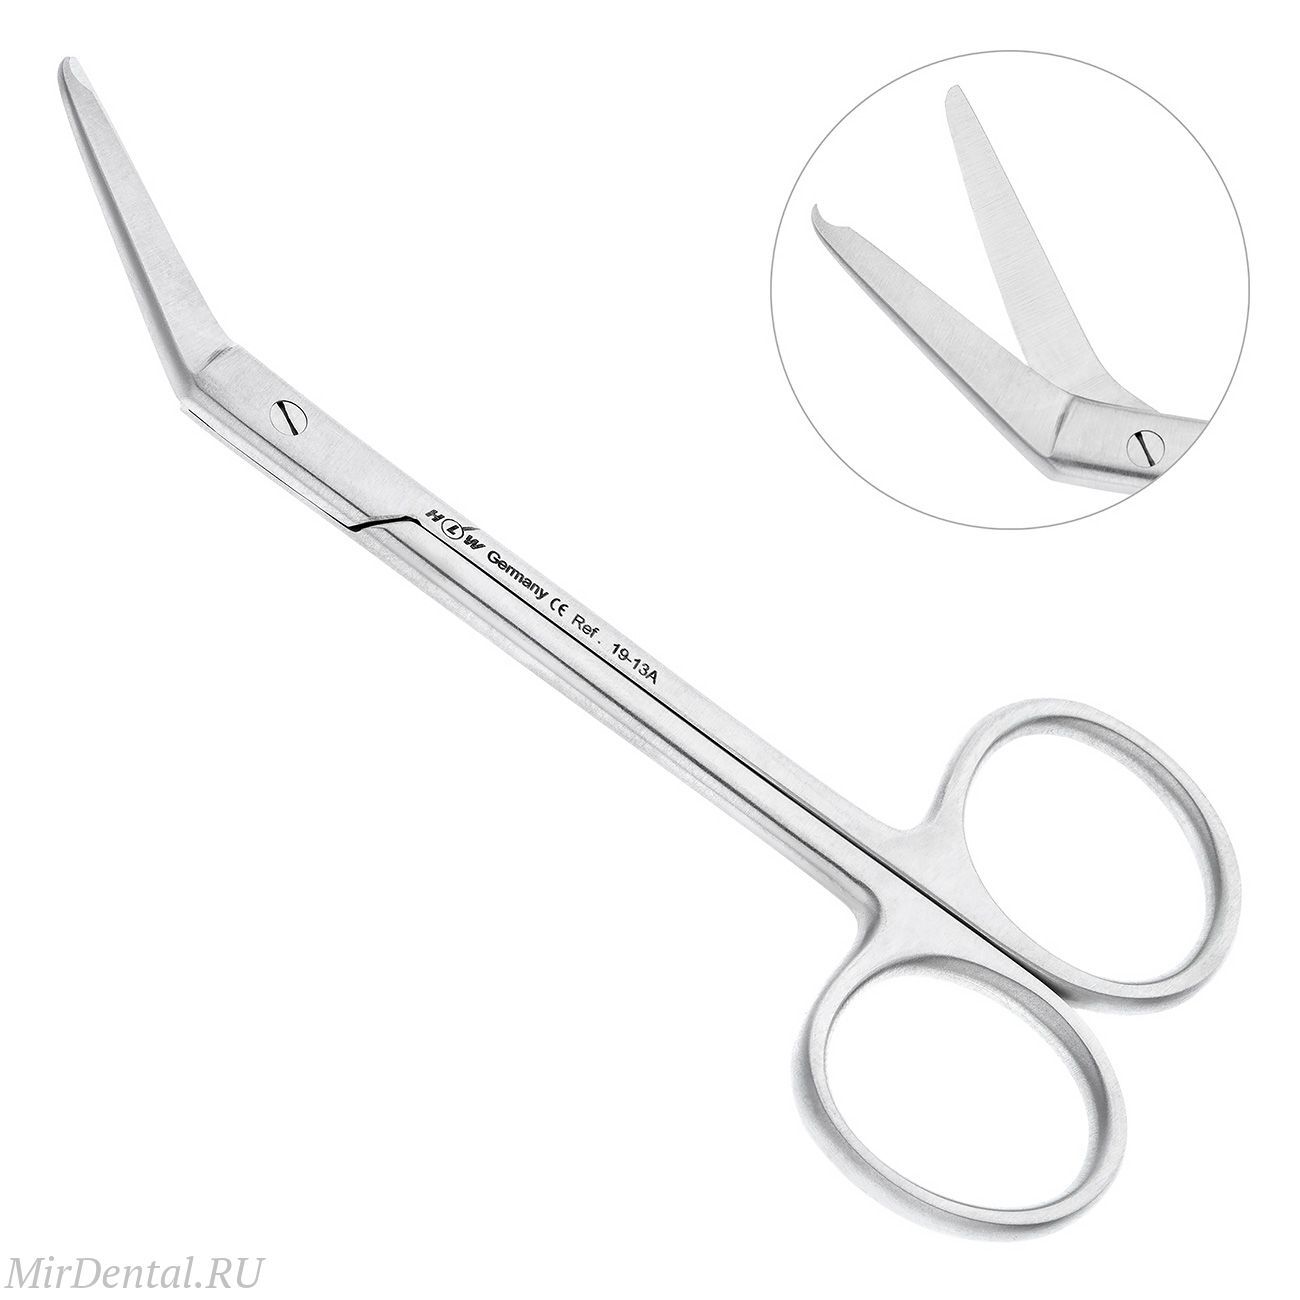 Ножницы хирургические угловые для снятия швов Nahtschere,11,5 см, 19-13A*